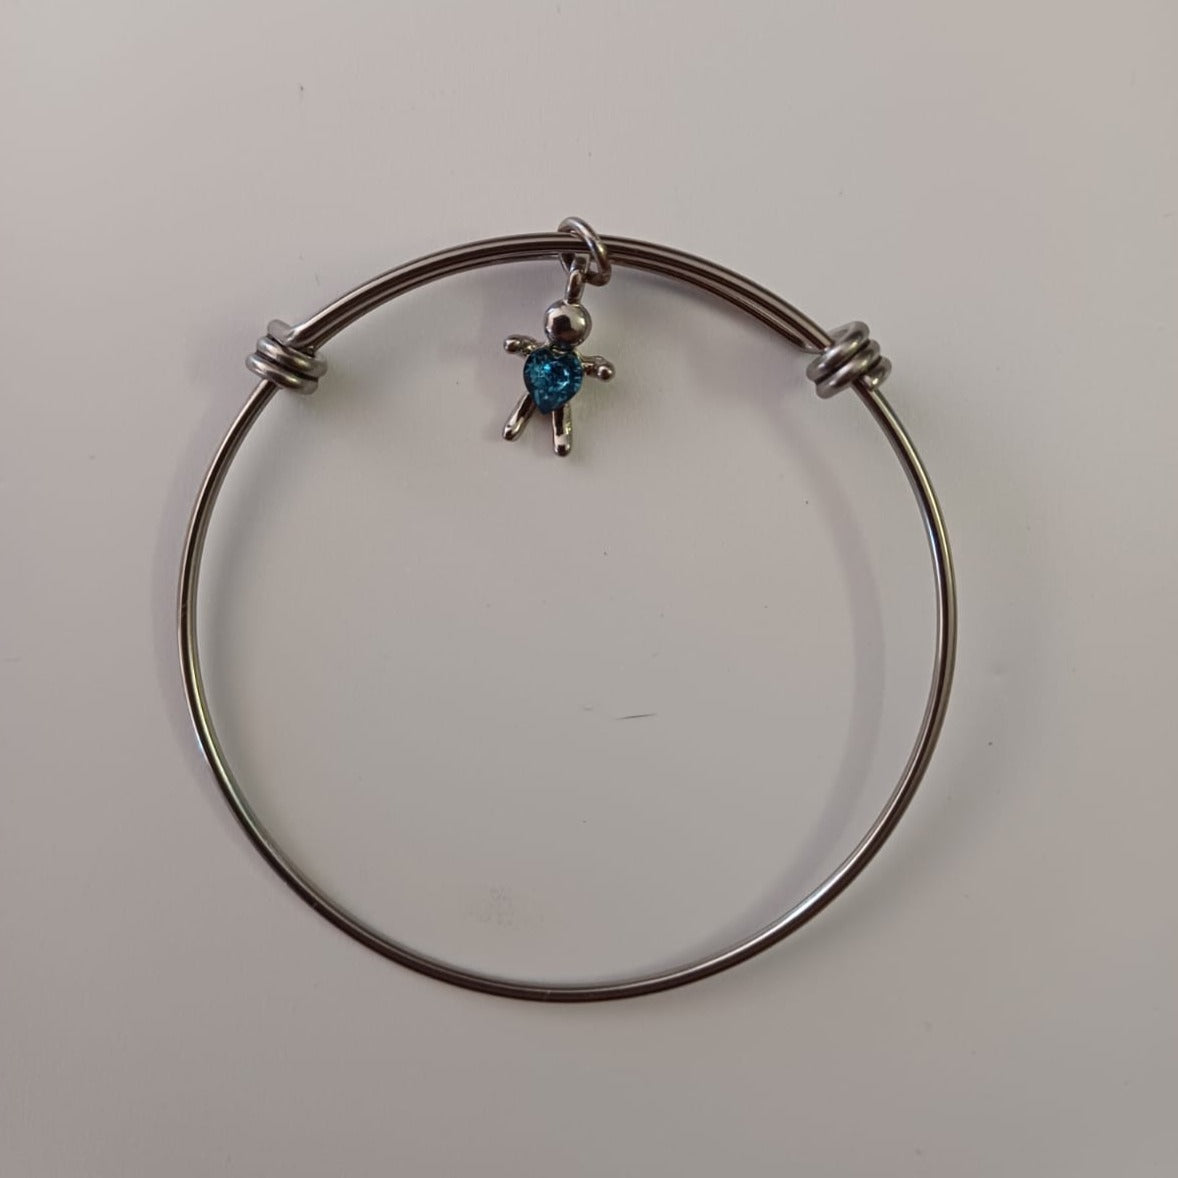 Bracelet with Blue Stone Boy Charm